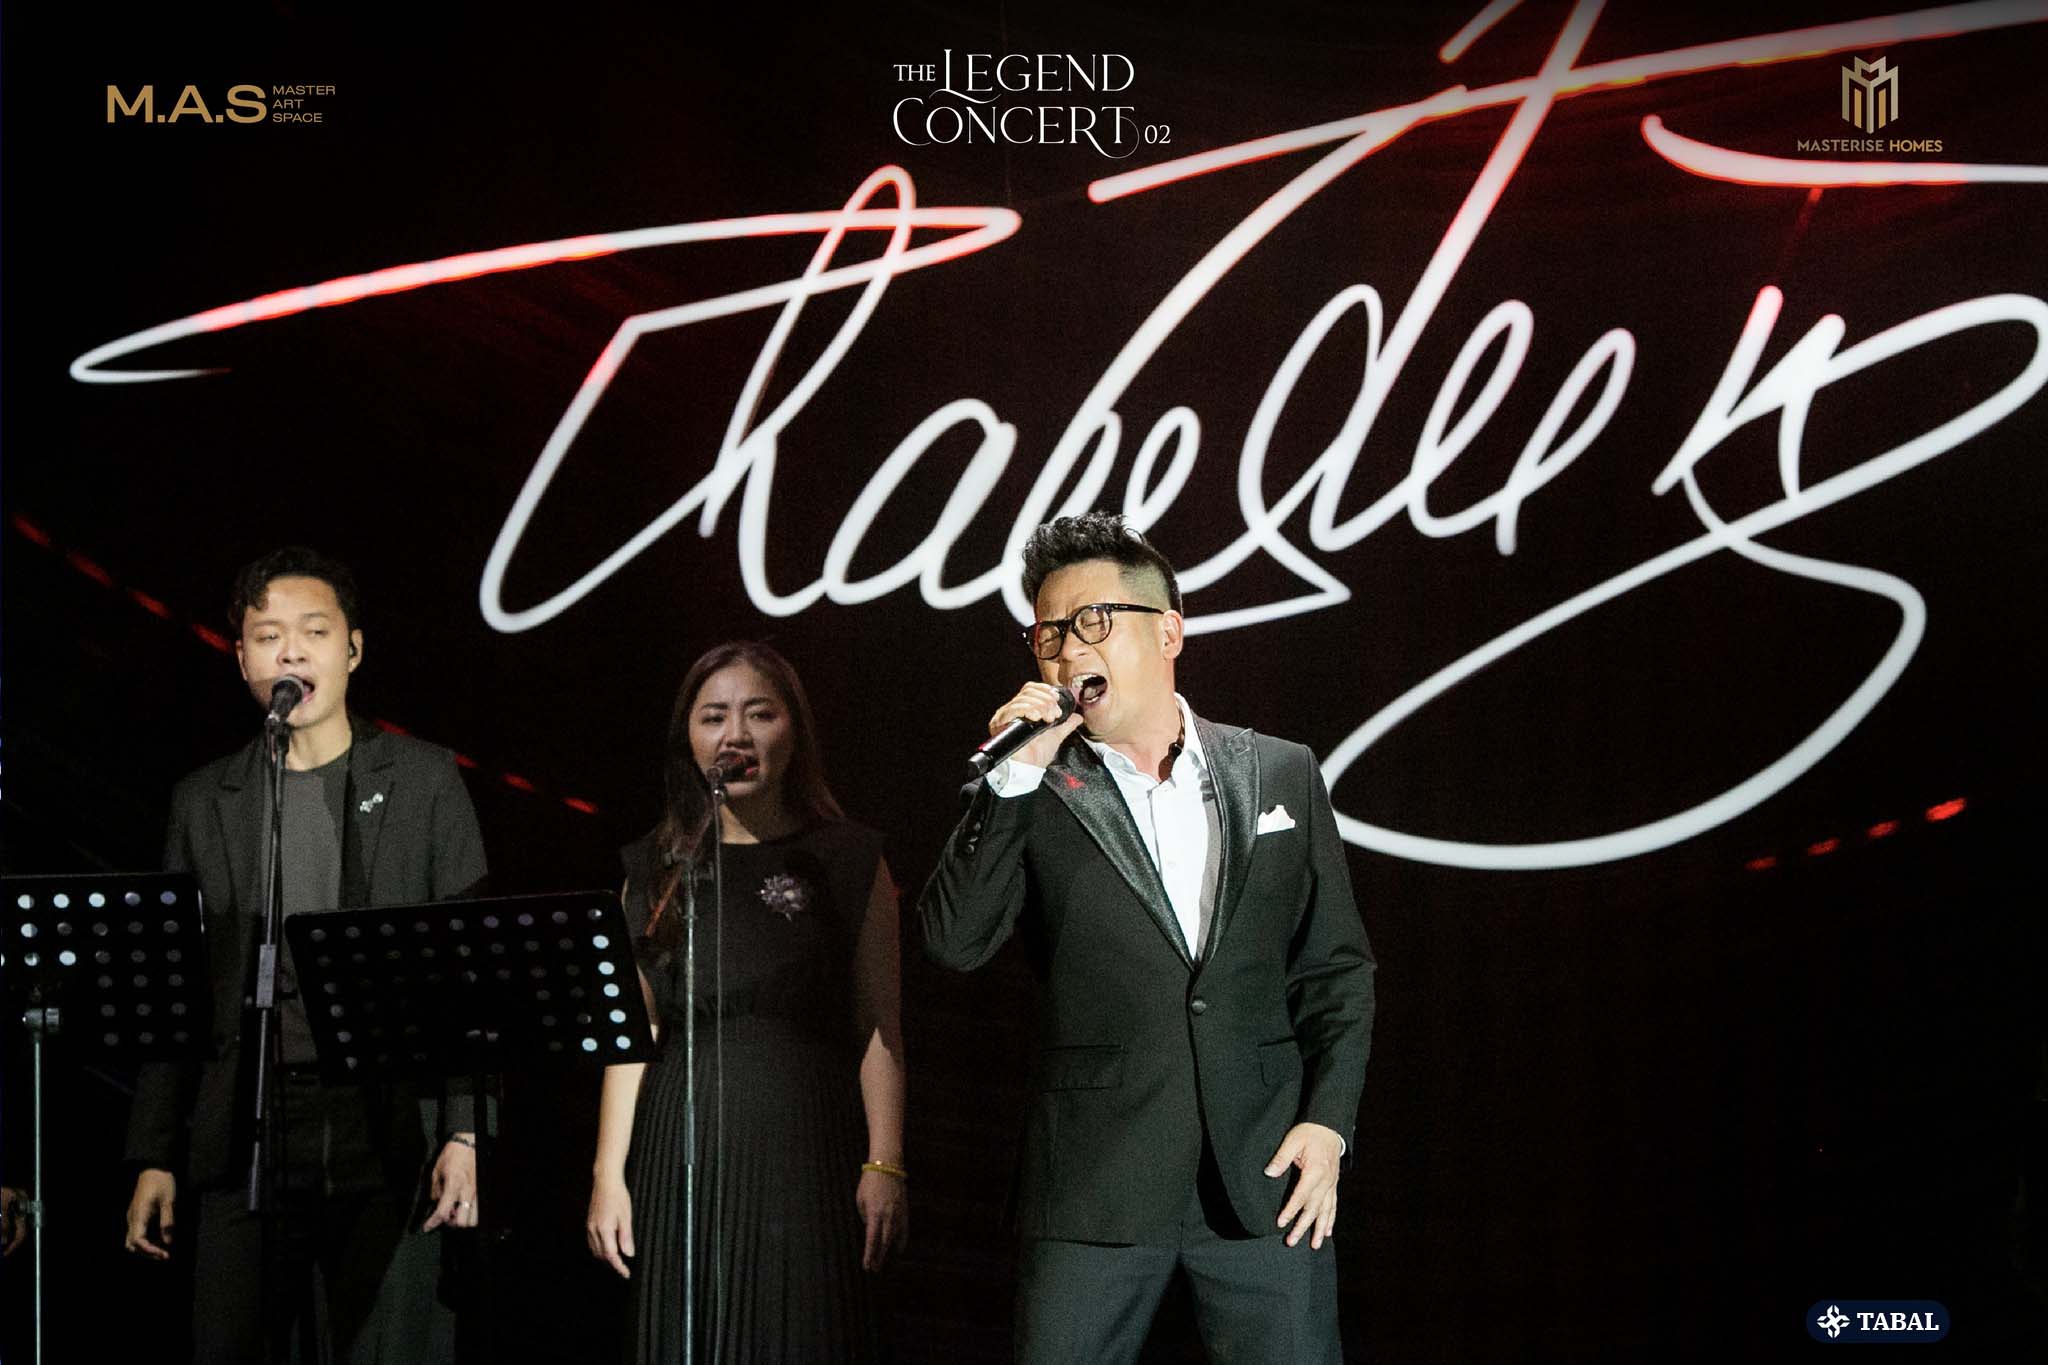 The Legend Concert 02 - Giai điệu tình ca của nhạc sĩ THANH TÙNG